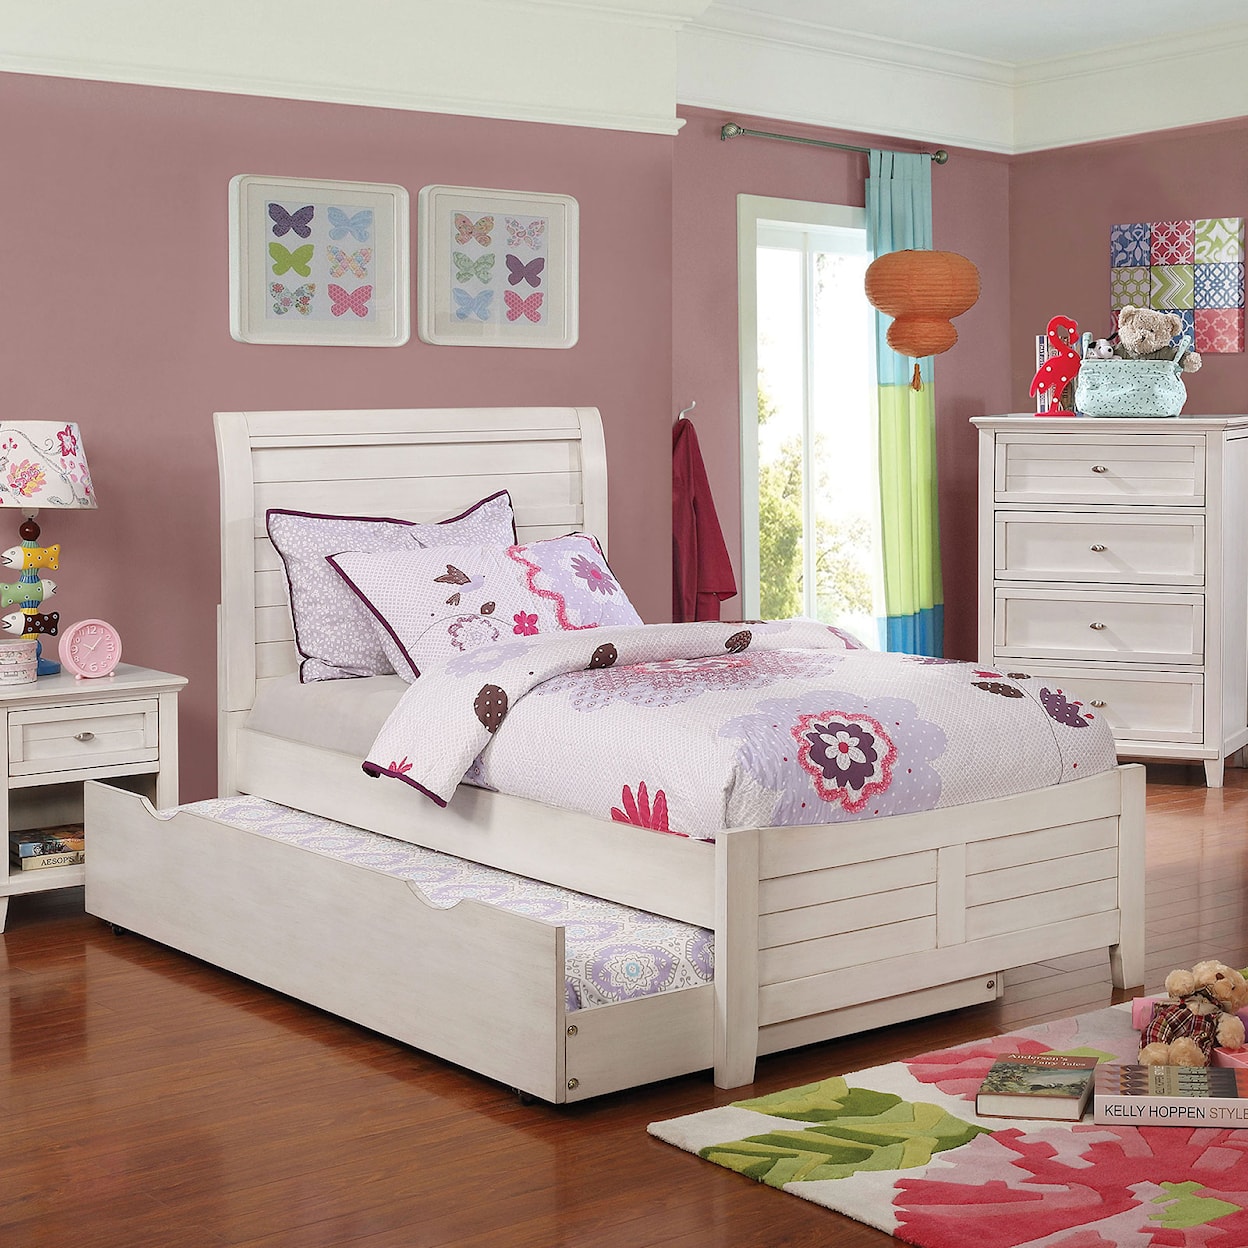 Furniture of America Brogan Twin Bed